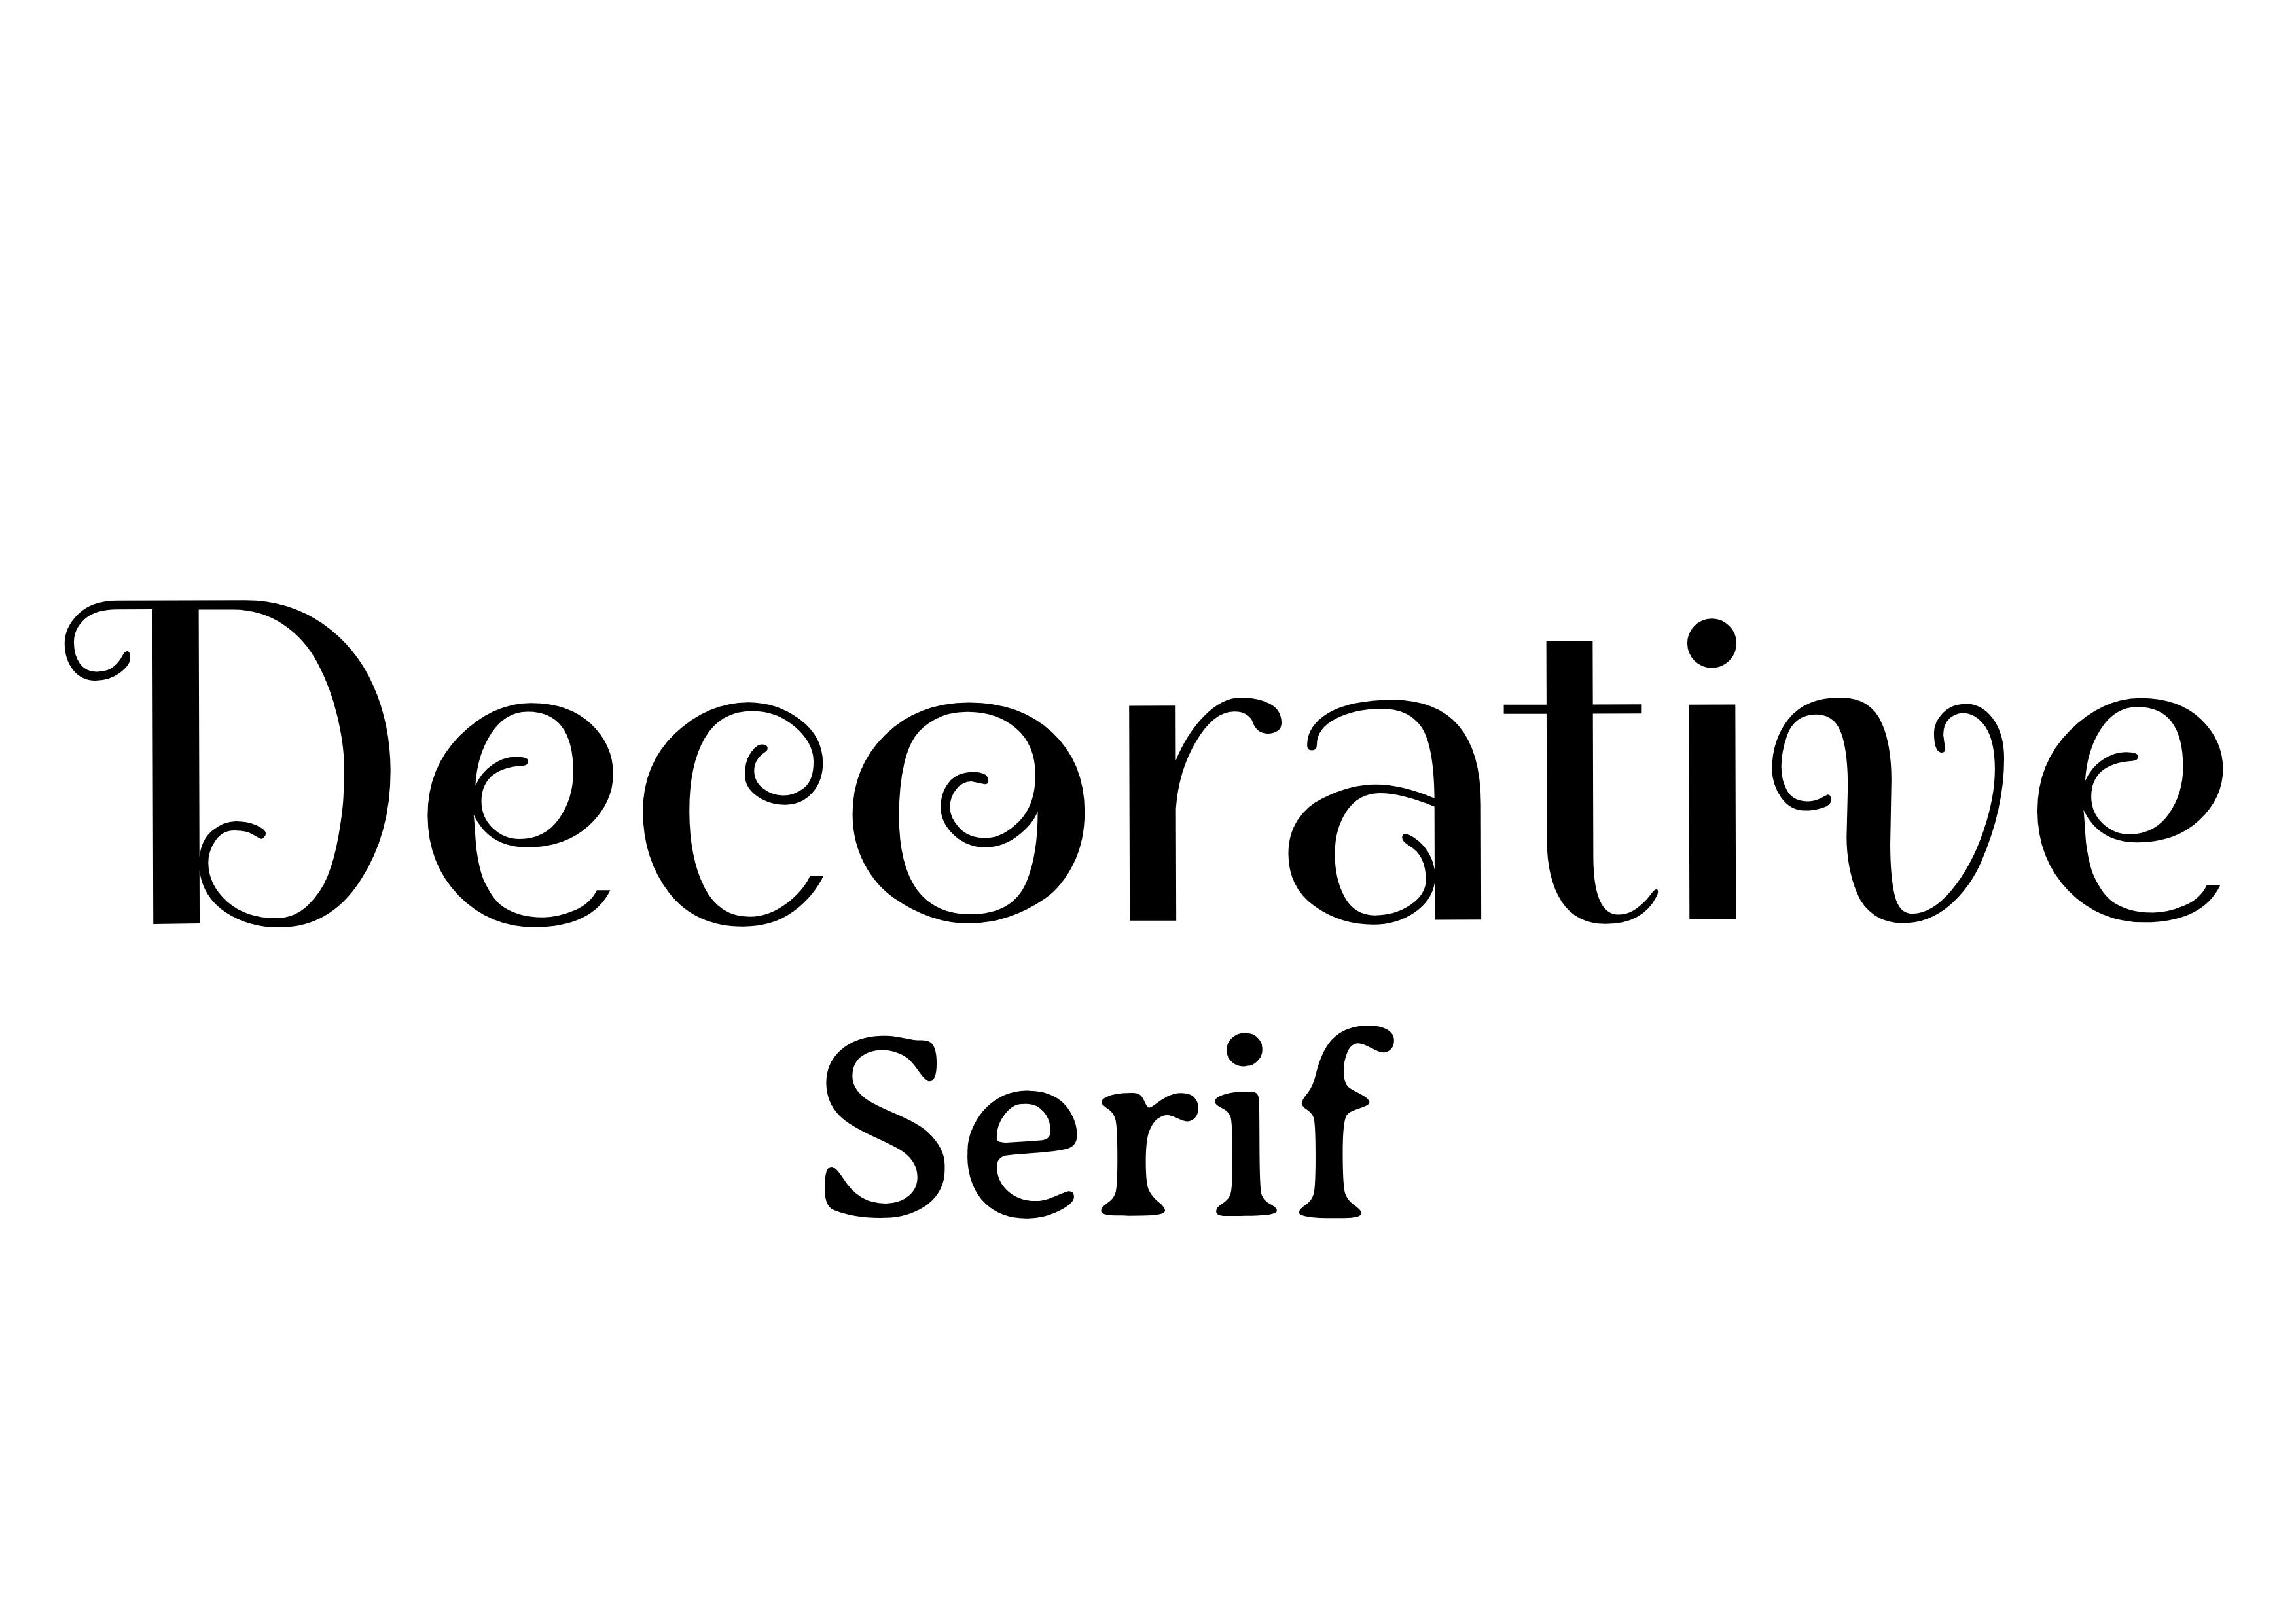 Schriftartenpaarung – „Dekorativ“ in der Mitte in Schwarz mit „Serif“ in Schwarz darunter kleiner